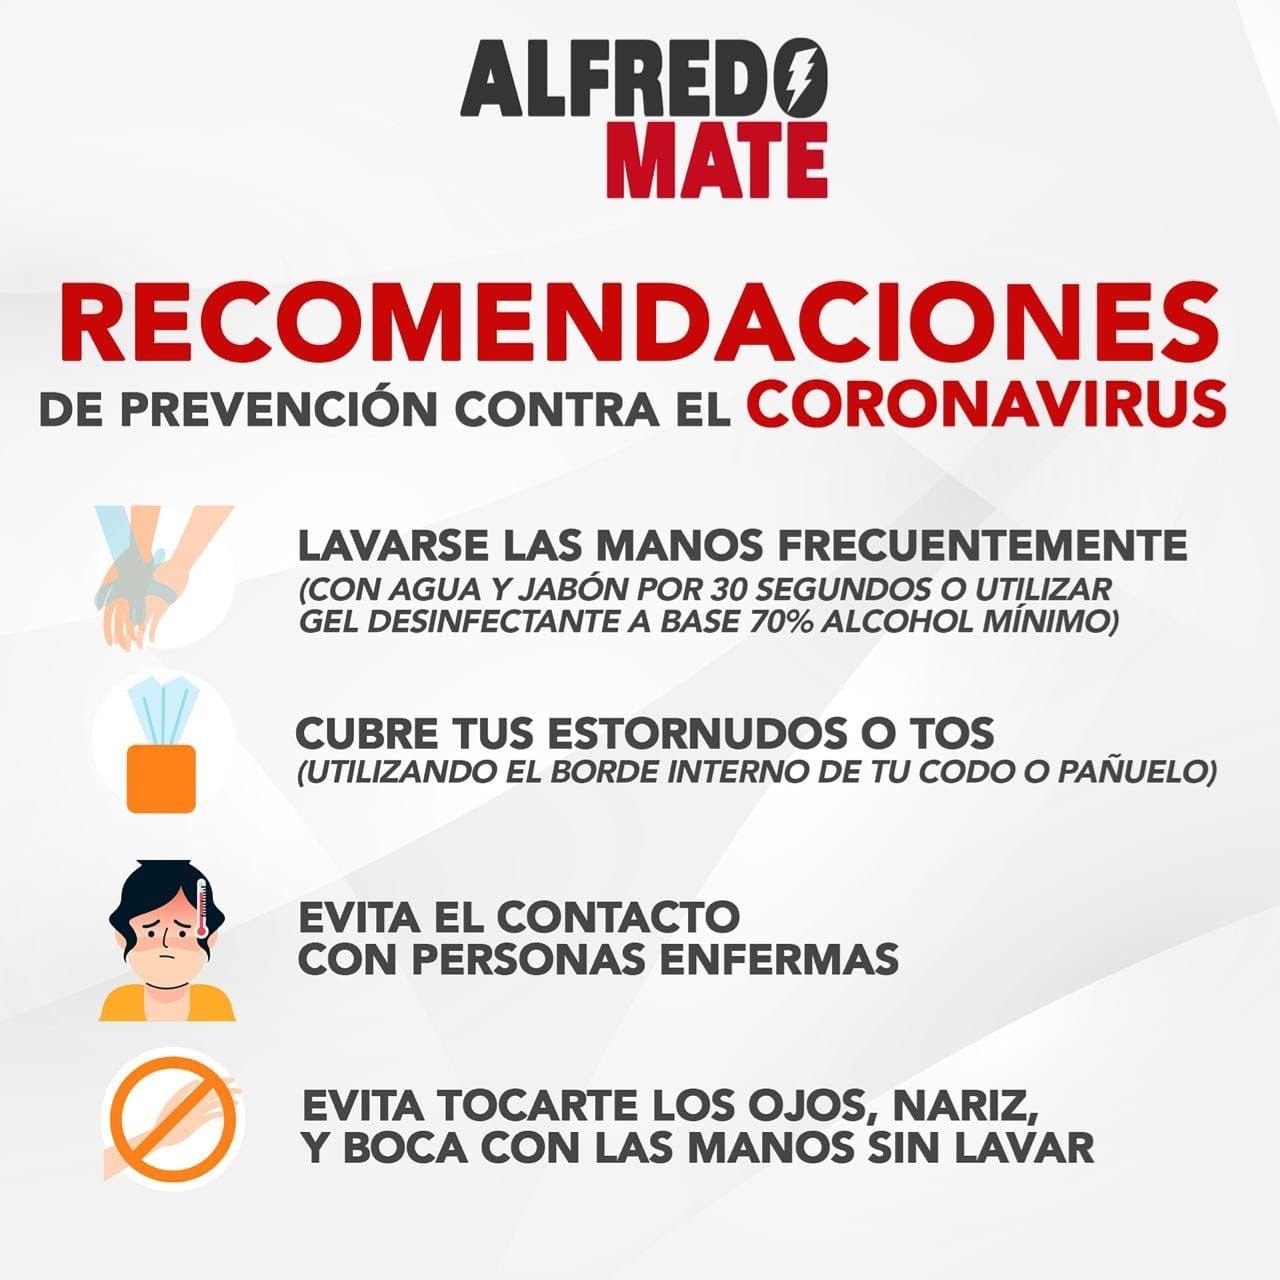 Lanza Alfredo Mate recomendaciones para evitar propagación del coronavirus 